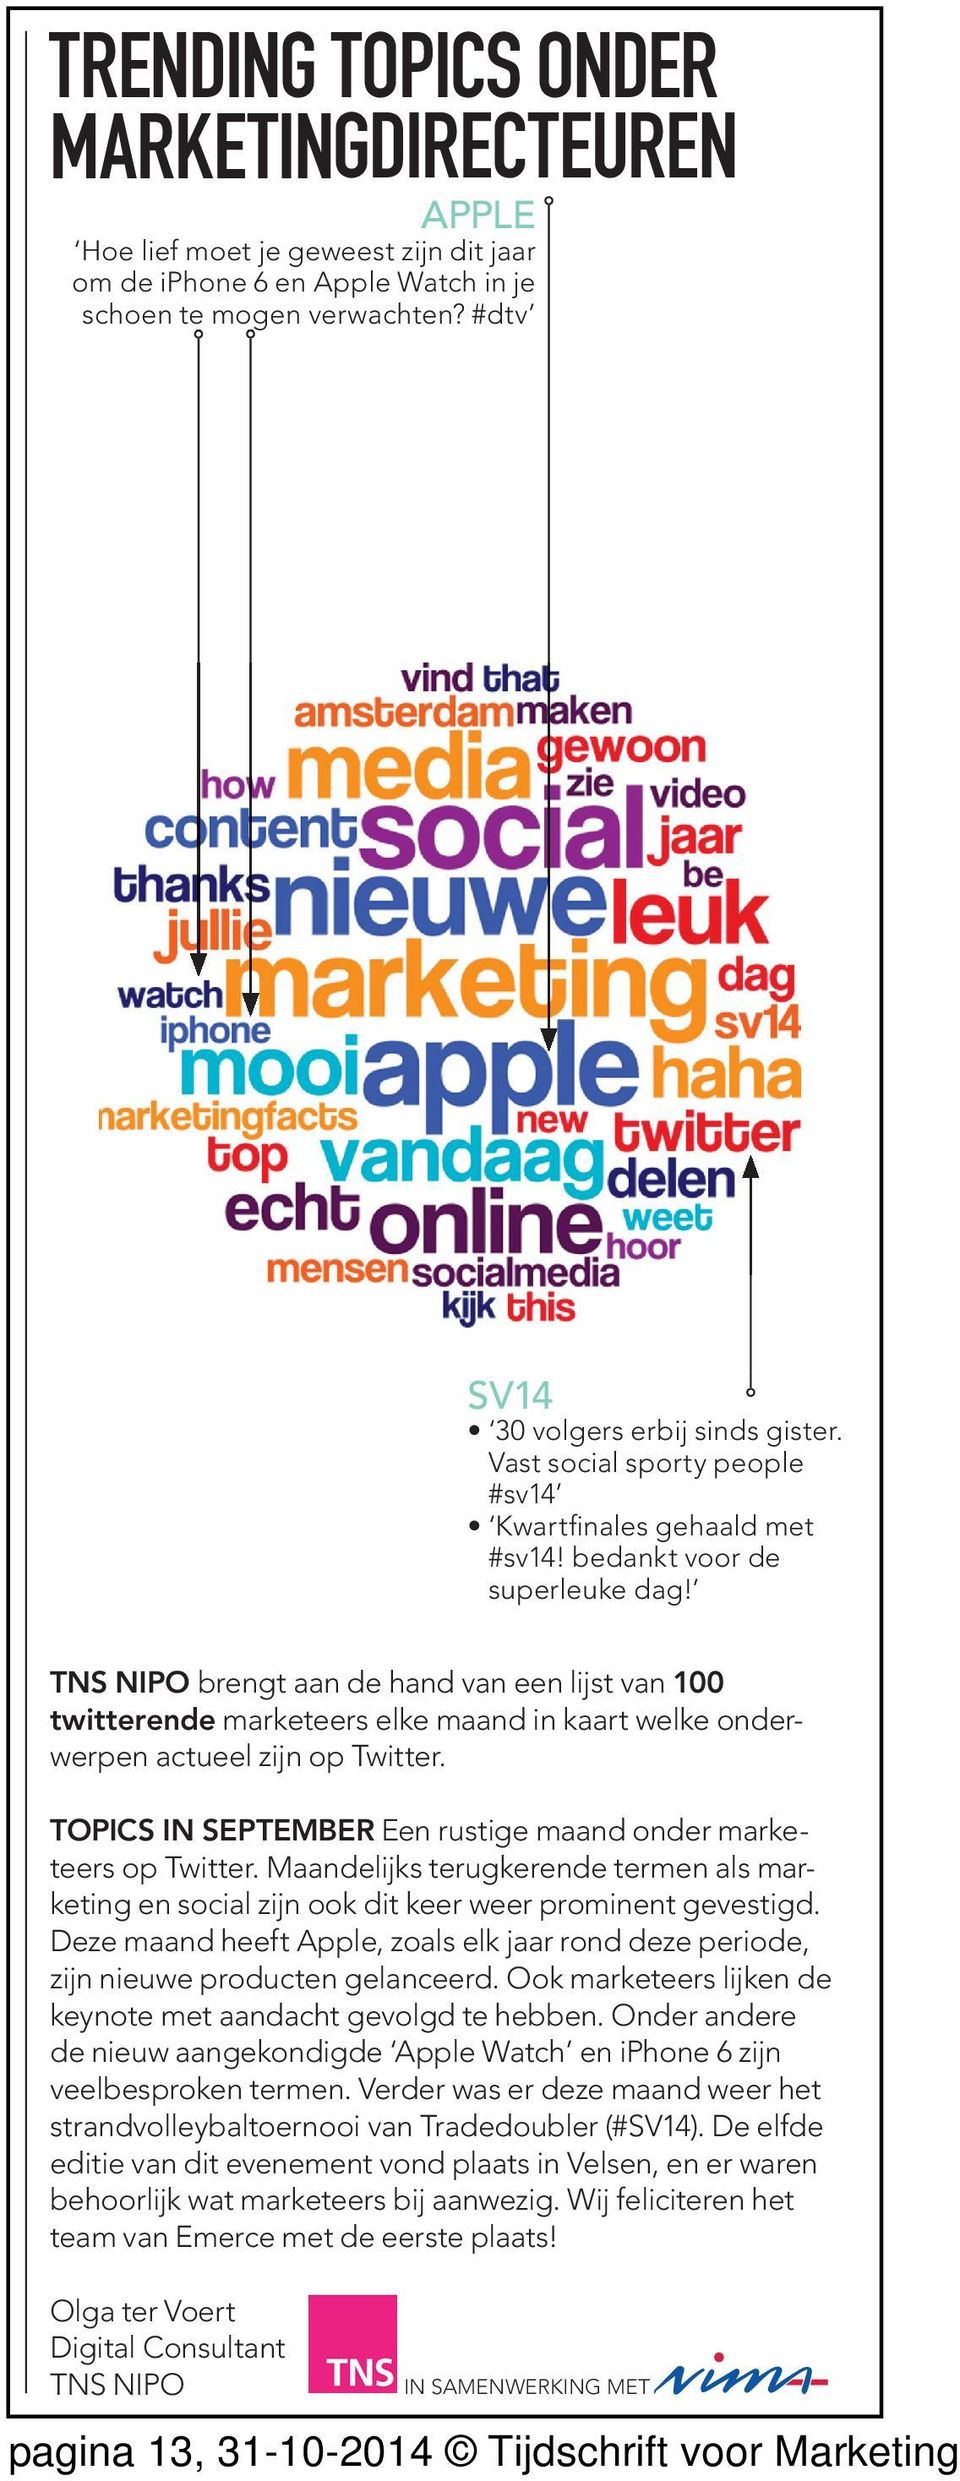 TNS NIPO brengt aan de hand van een lijst van 100 twitterende marketeers elke maand in kaart welke onderweren actueel zijn o Twitter.